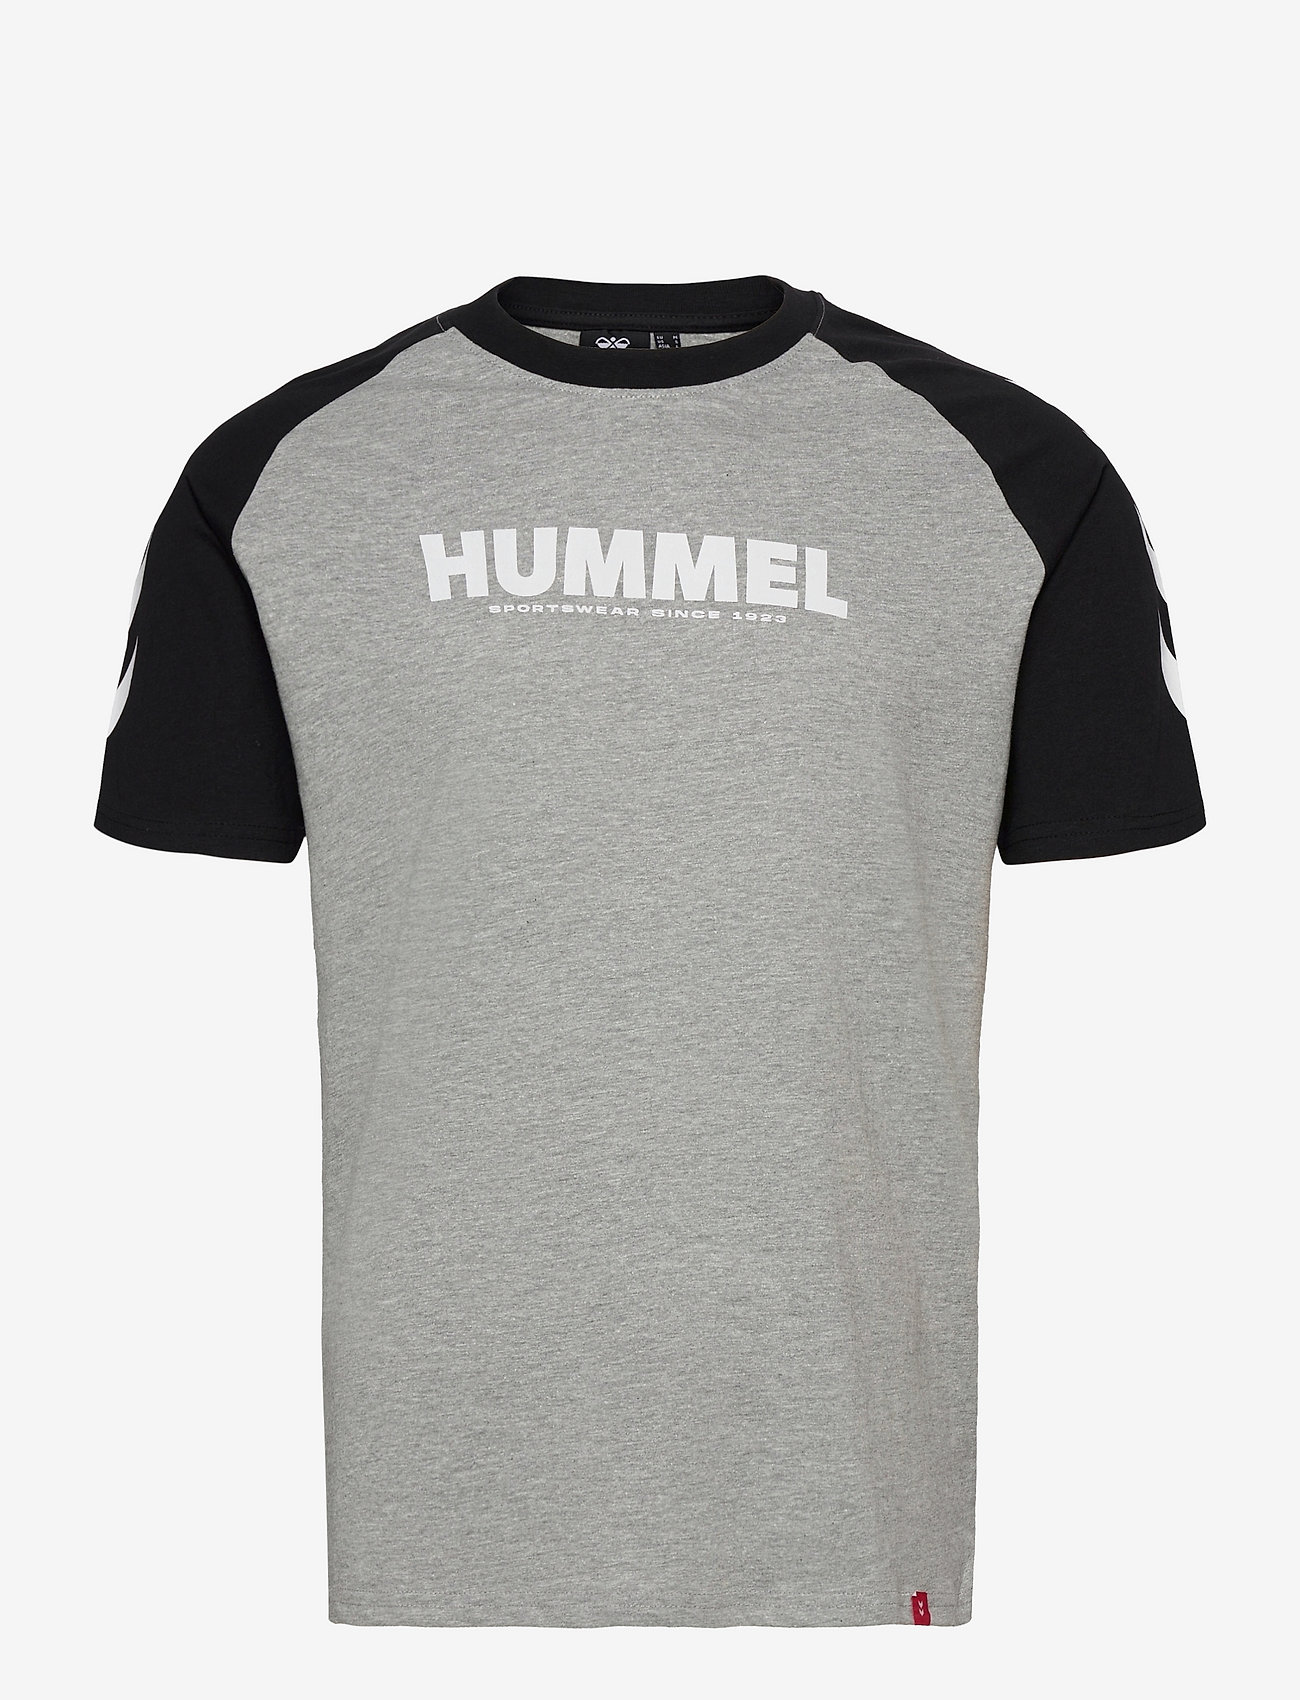 Hummel - hmlLEGACY BLOCKED T-SHIRT - lägsta priserna - grey melange - 0